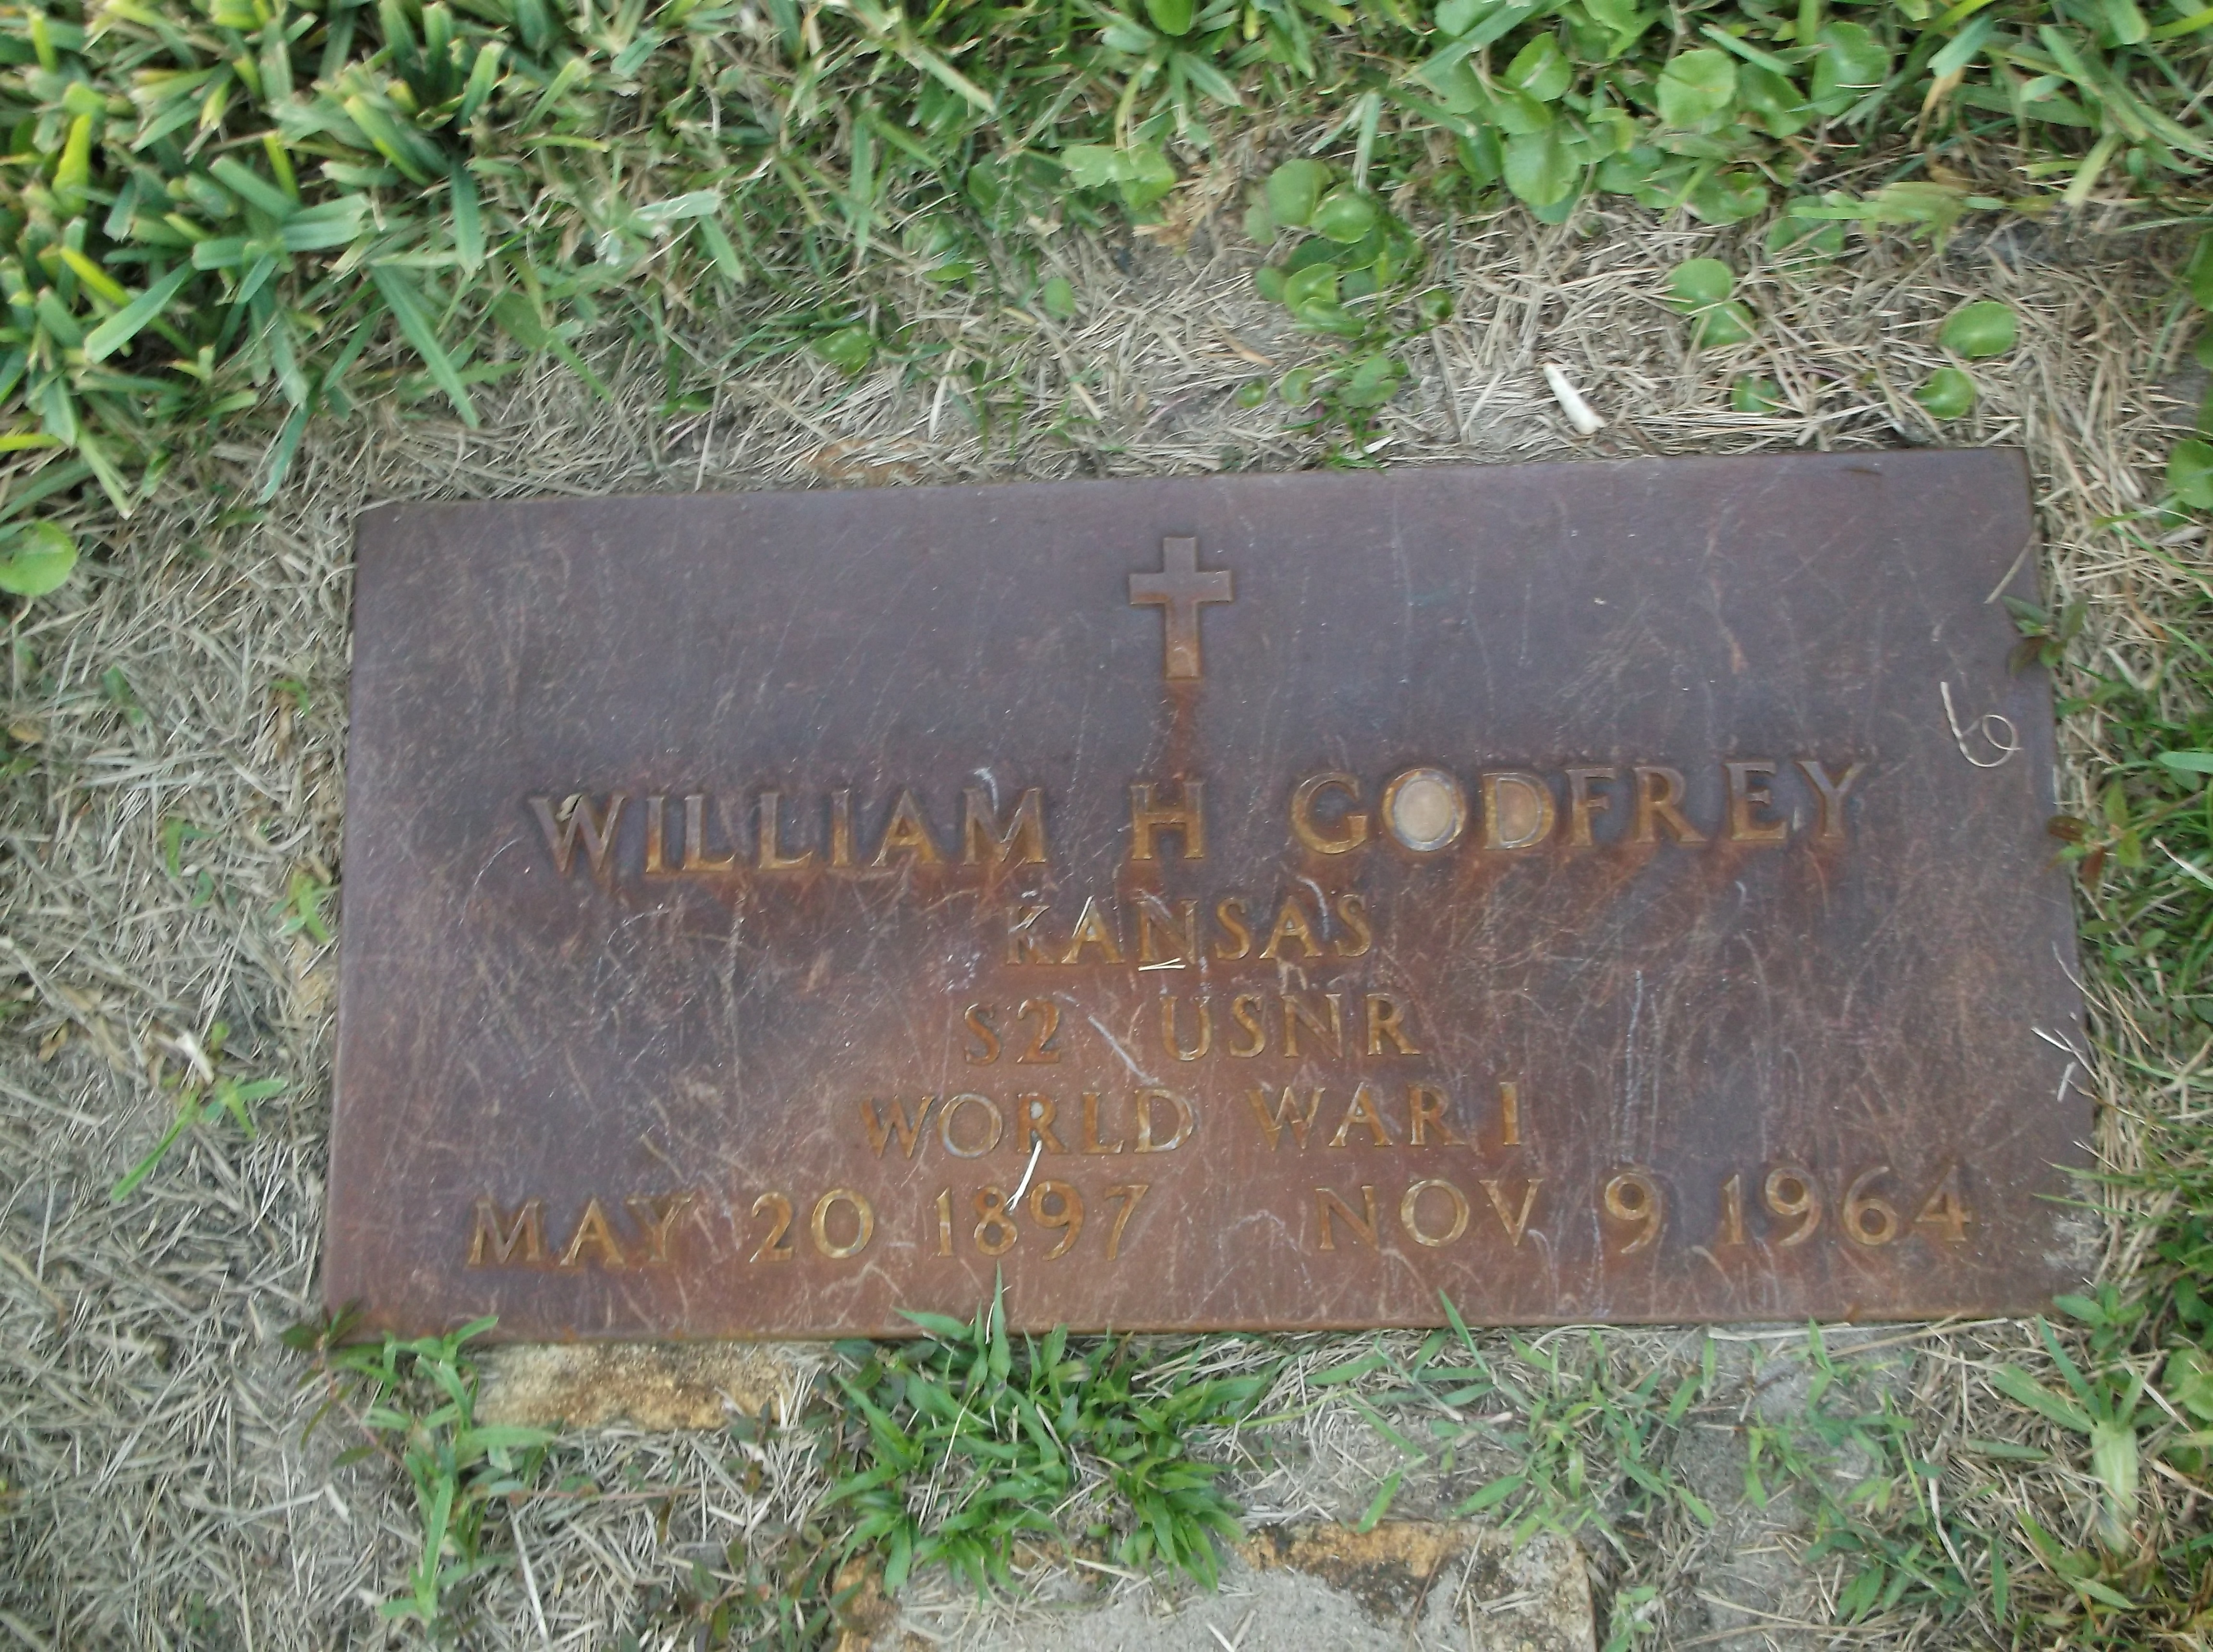 William H Godfrey